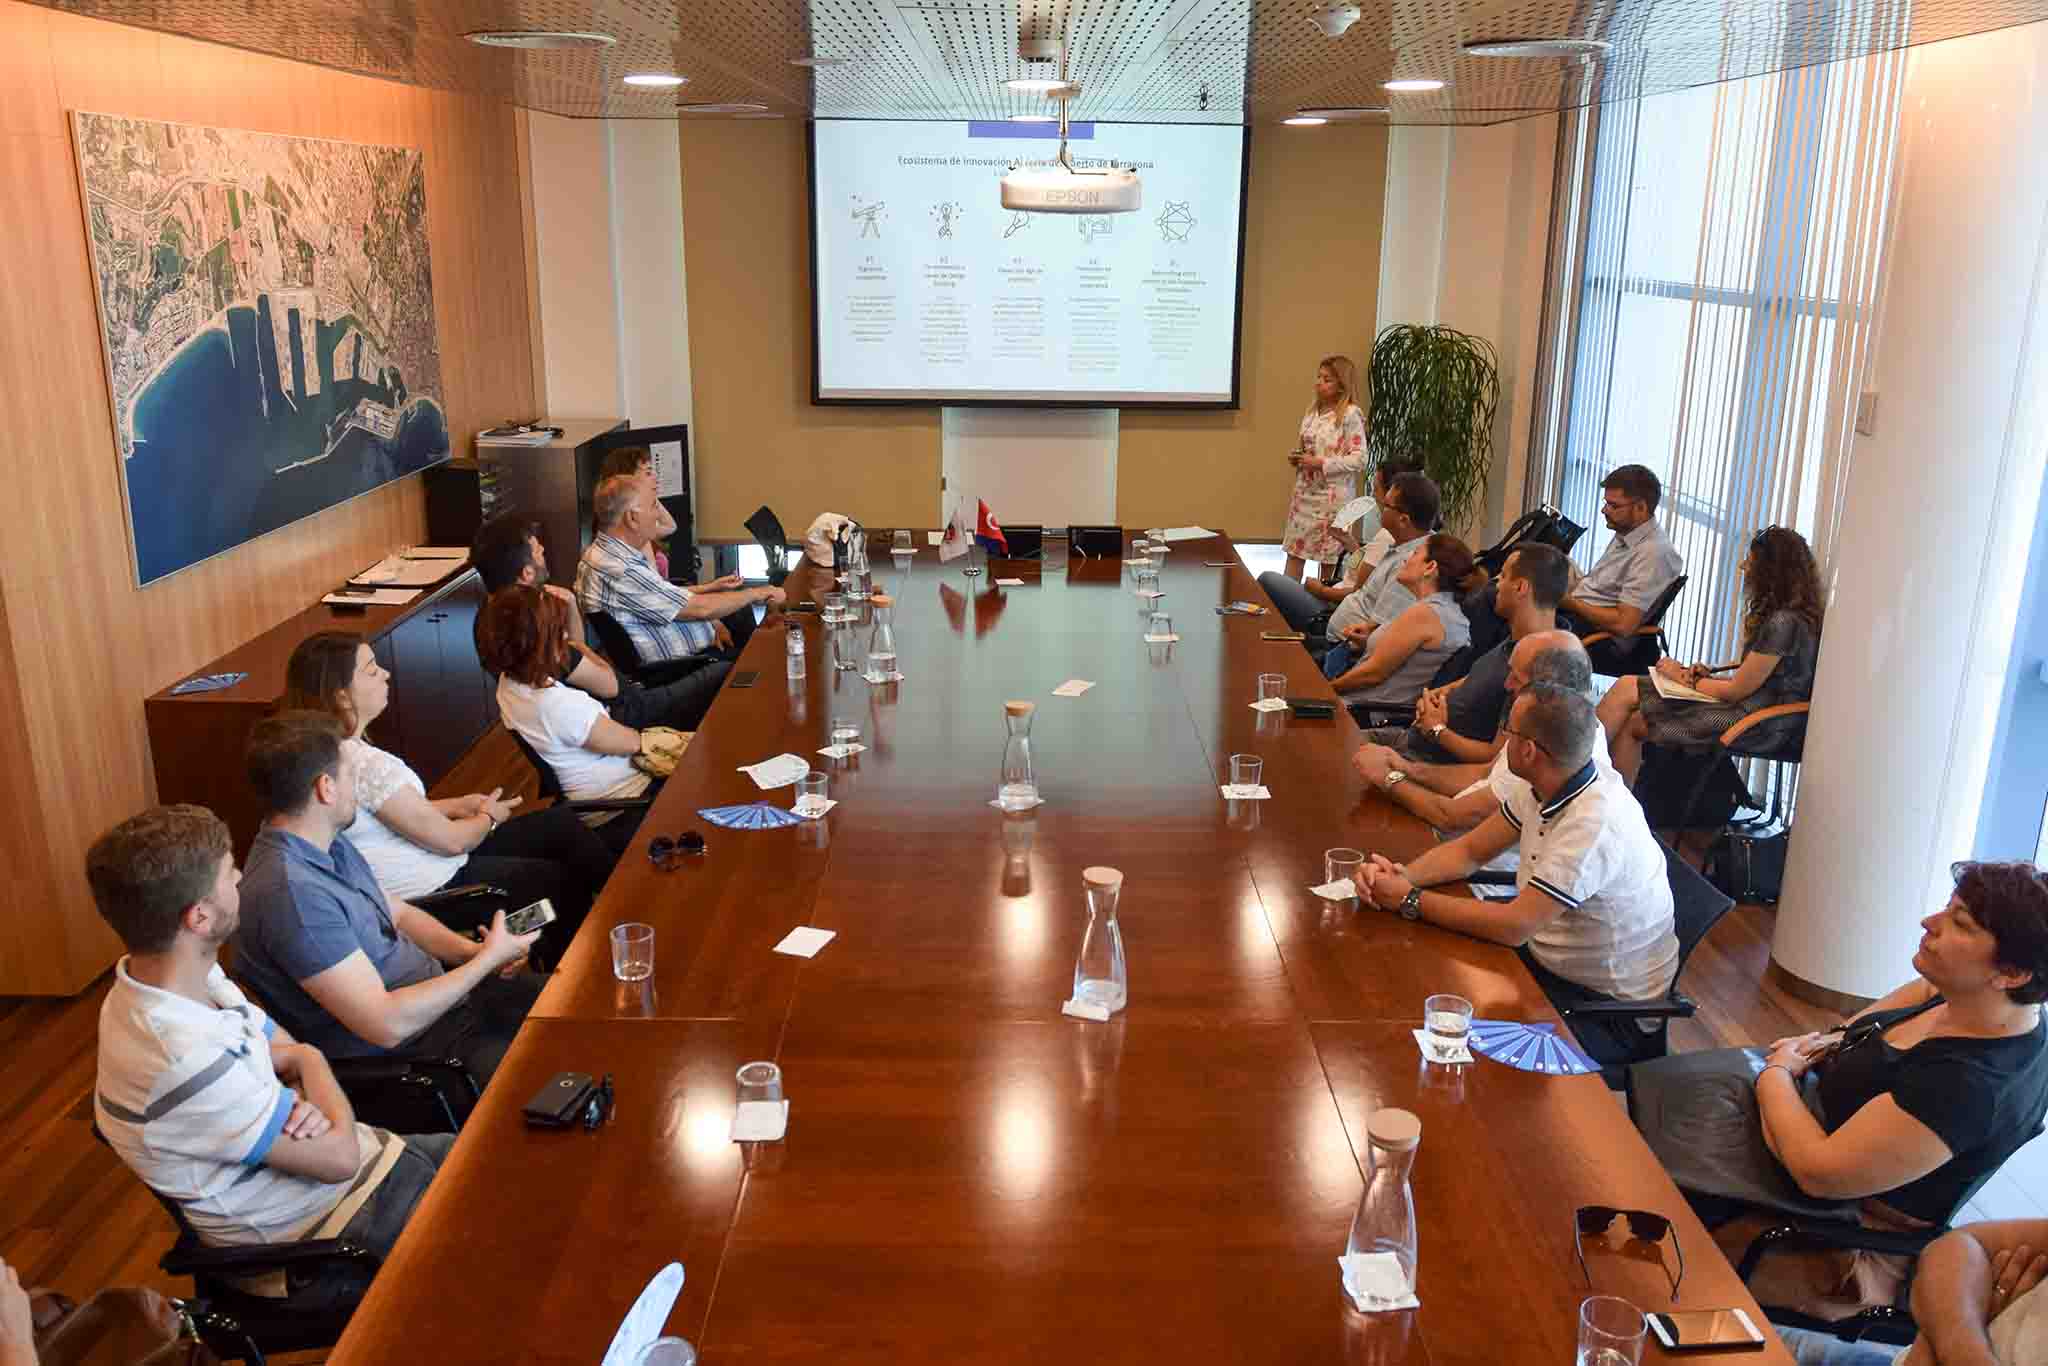    La delegació de Turquia s’ha interessat pels projectes innovadors impulsat pel Port